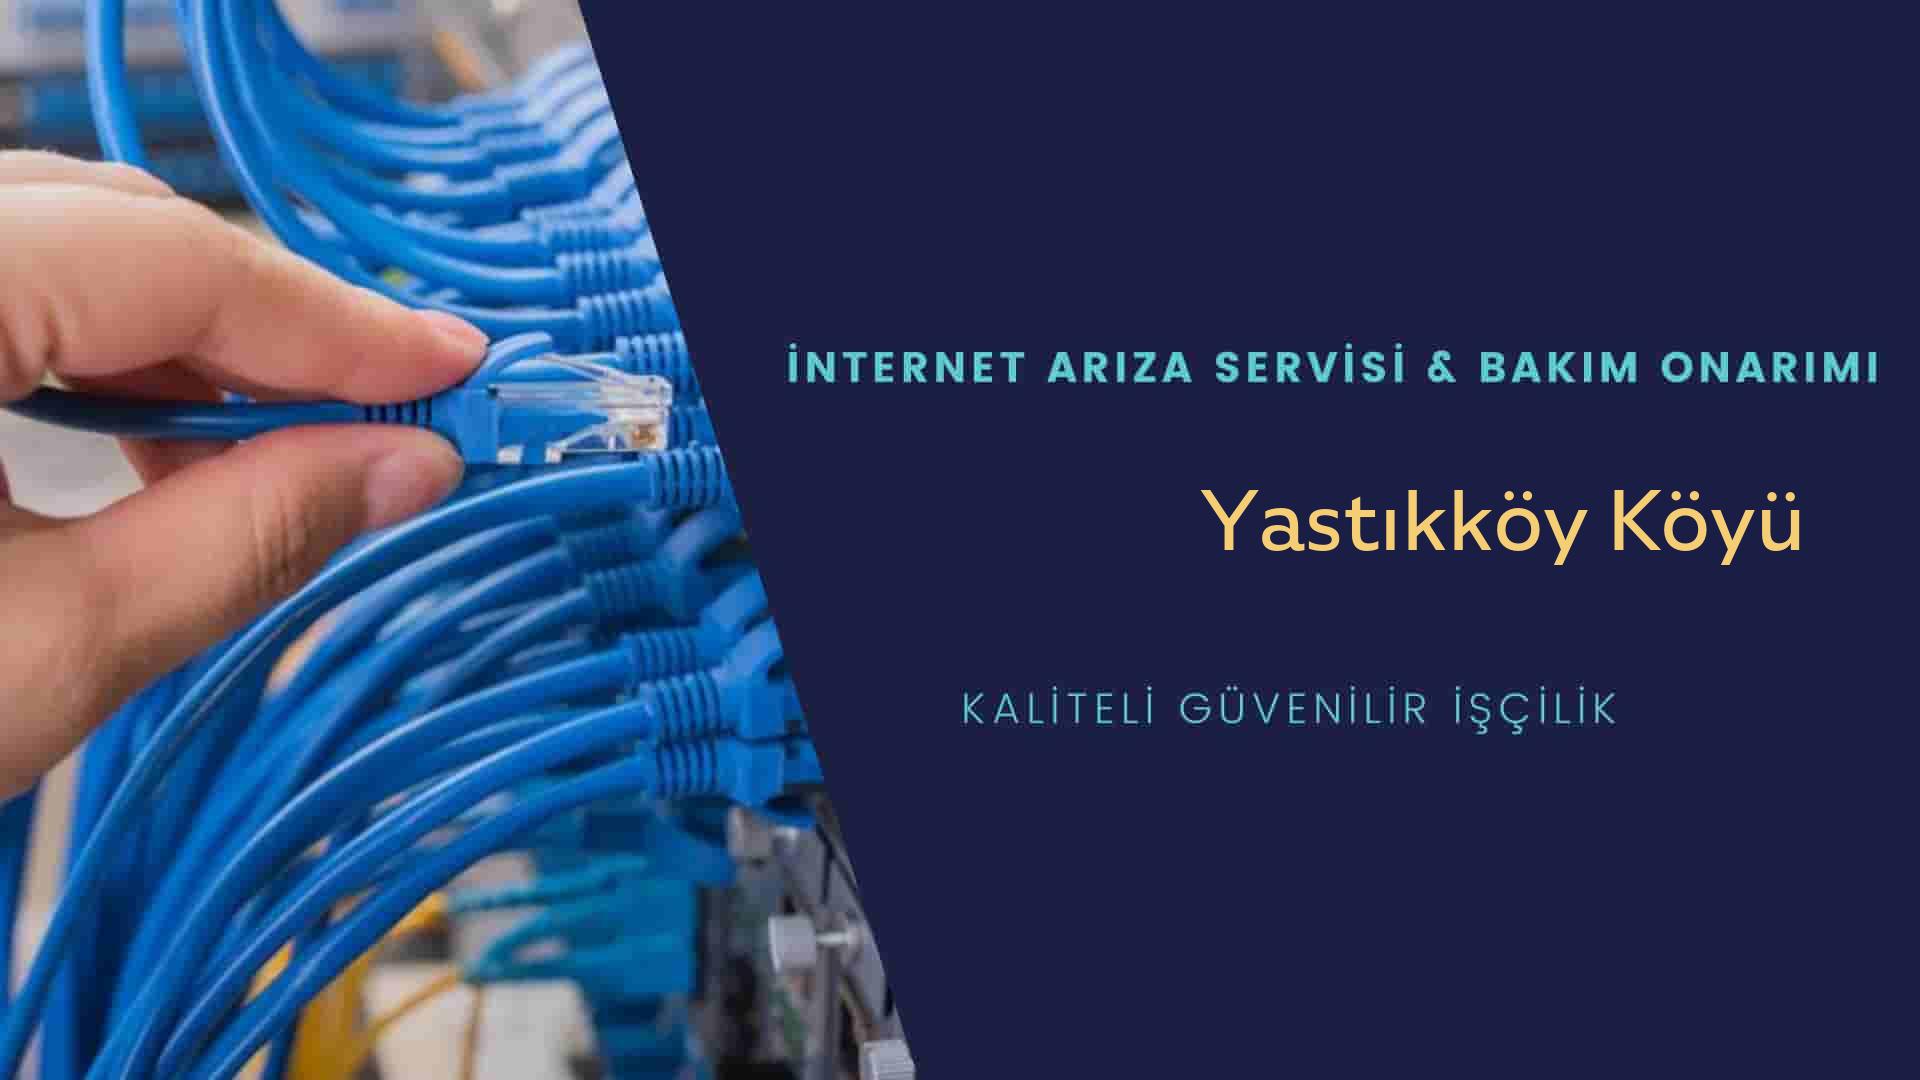 Yastıkköy Köyü internet kablosu çekimi yapan yerler veya elektrikçiler mi? arıyorsunuz doğru yerdesiniz o zaman sizlere 7/24 yardımcı olacak profesyonel ustalarımız bir telefon kadar yakındır size.